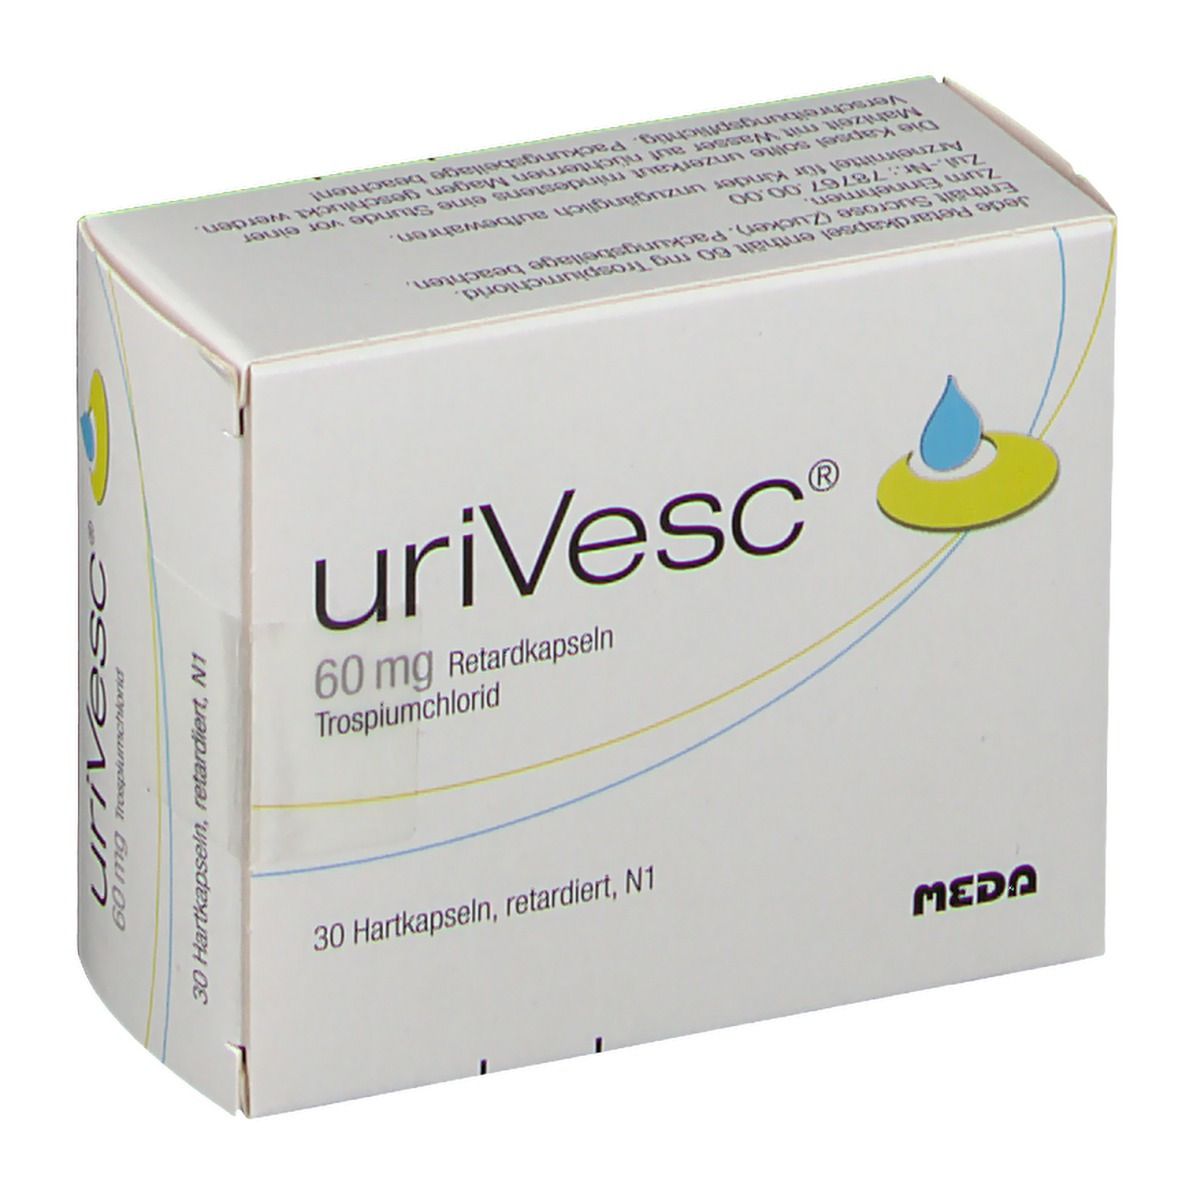 uriVesc® 60 mg